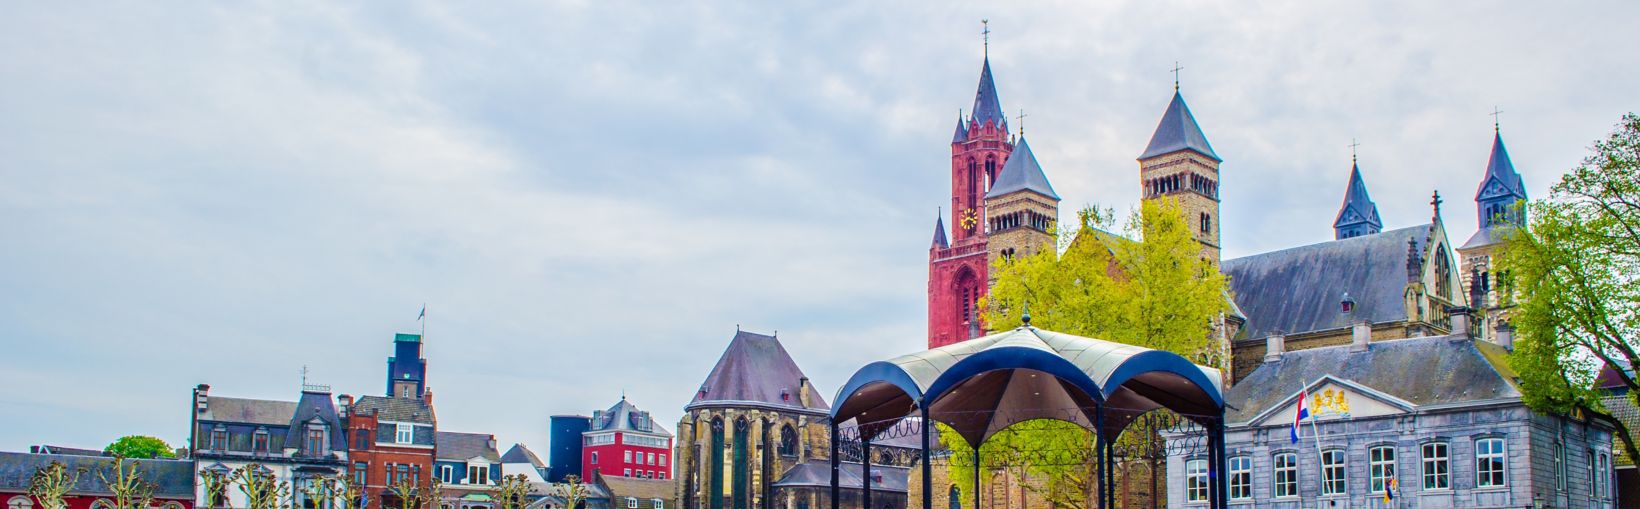 MAASTRICHT, PAESI BASSI, 12 APRILE 2014: Vista su vrijthof - storico del centro di Maastricht.